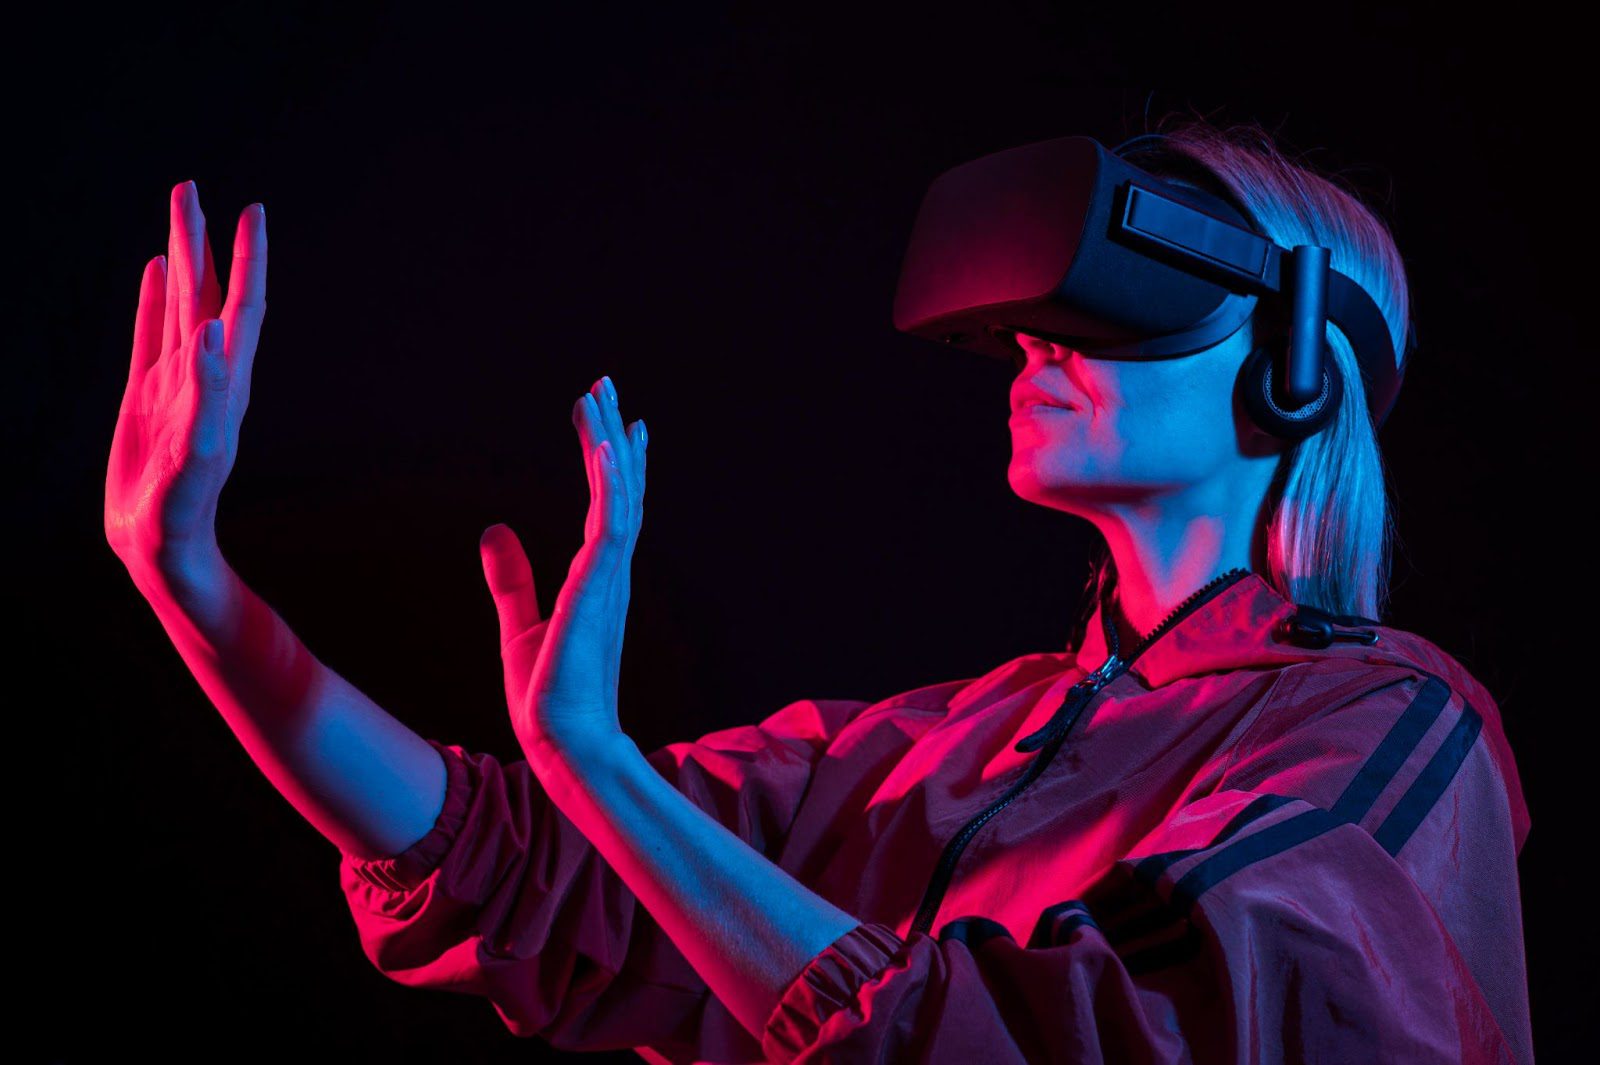 图片展示一位女性戴着虚拟现实头盔和耳机，似乎在体验VR内容，她举起双手，背景是暗色调，光线呈现出霓虹般效果。